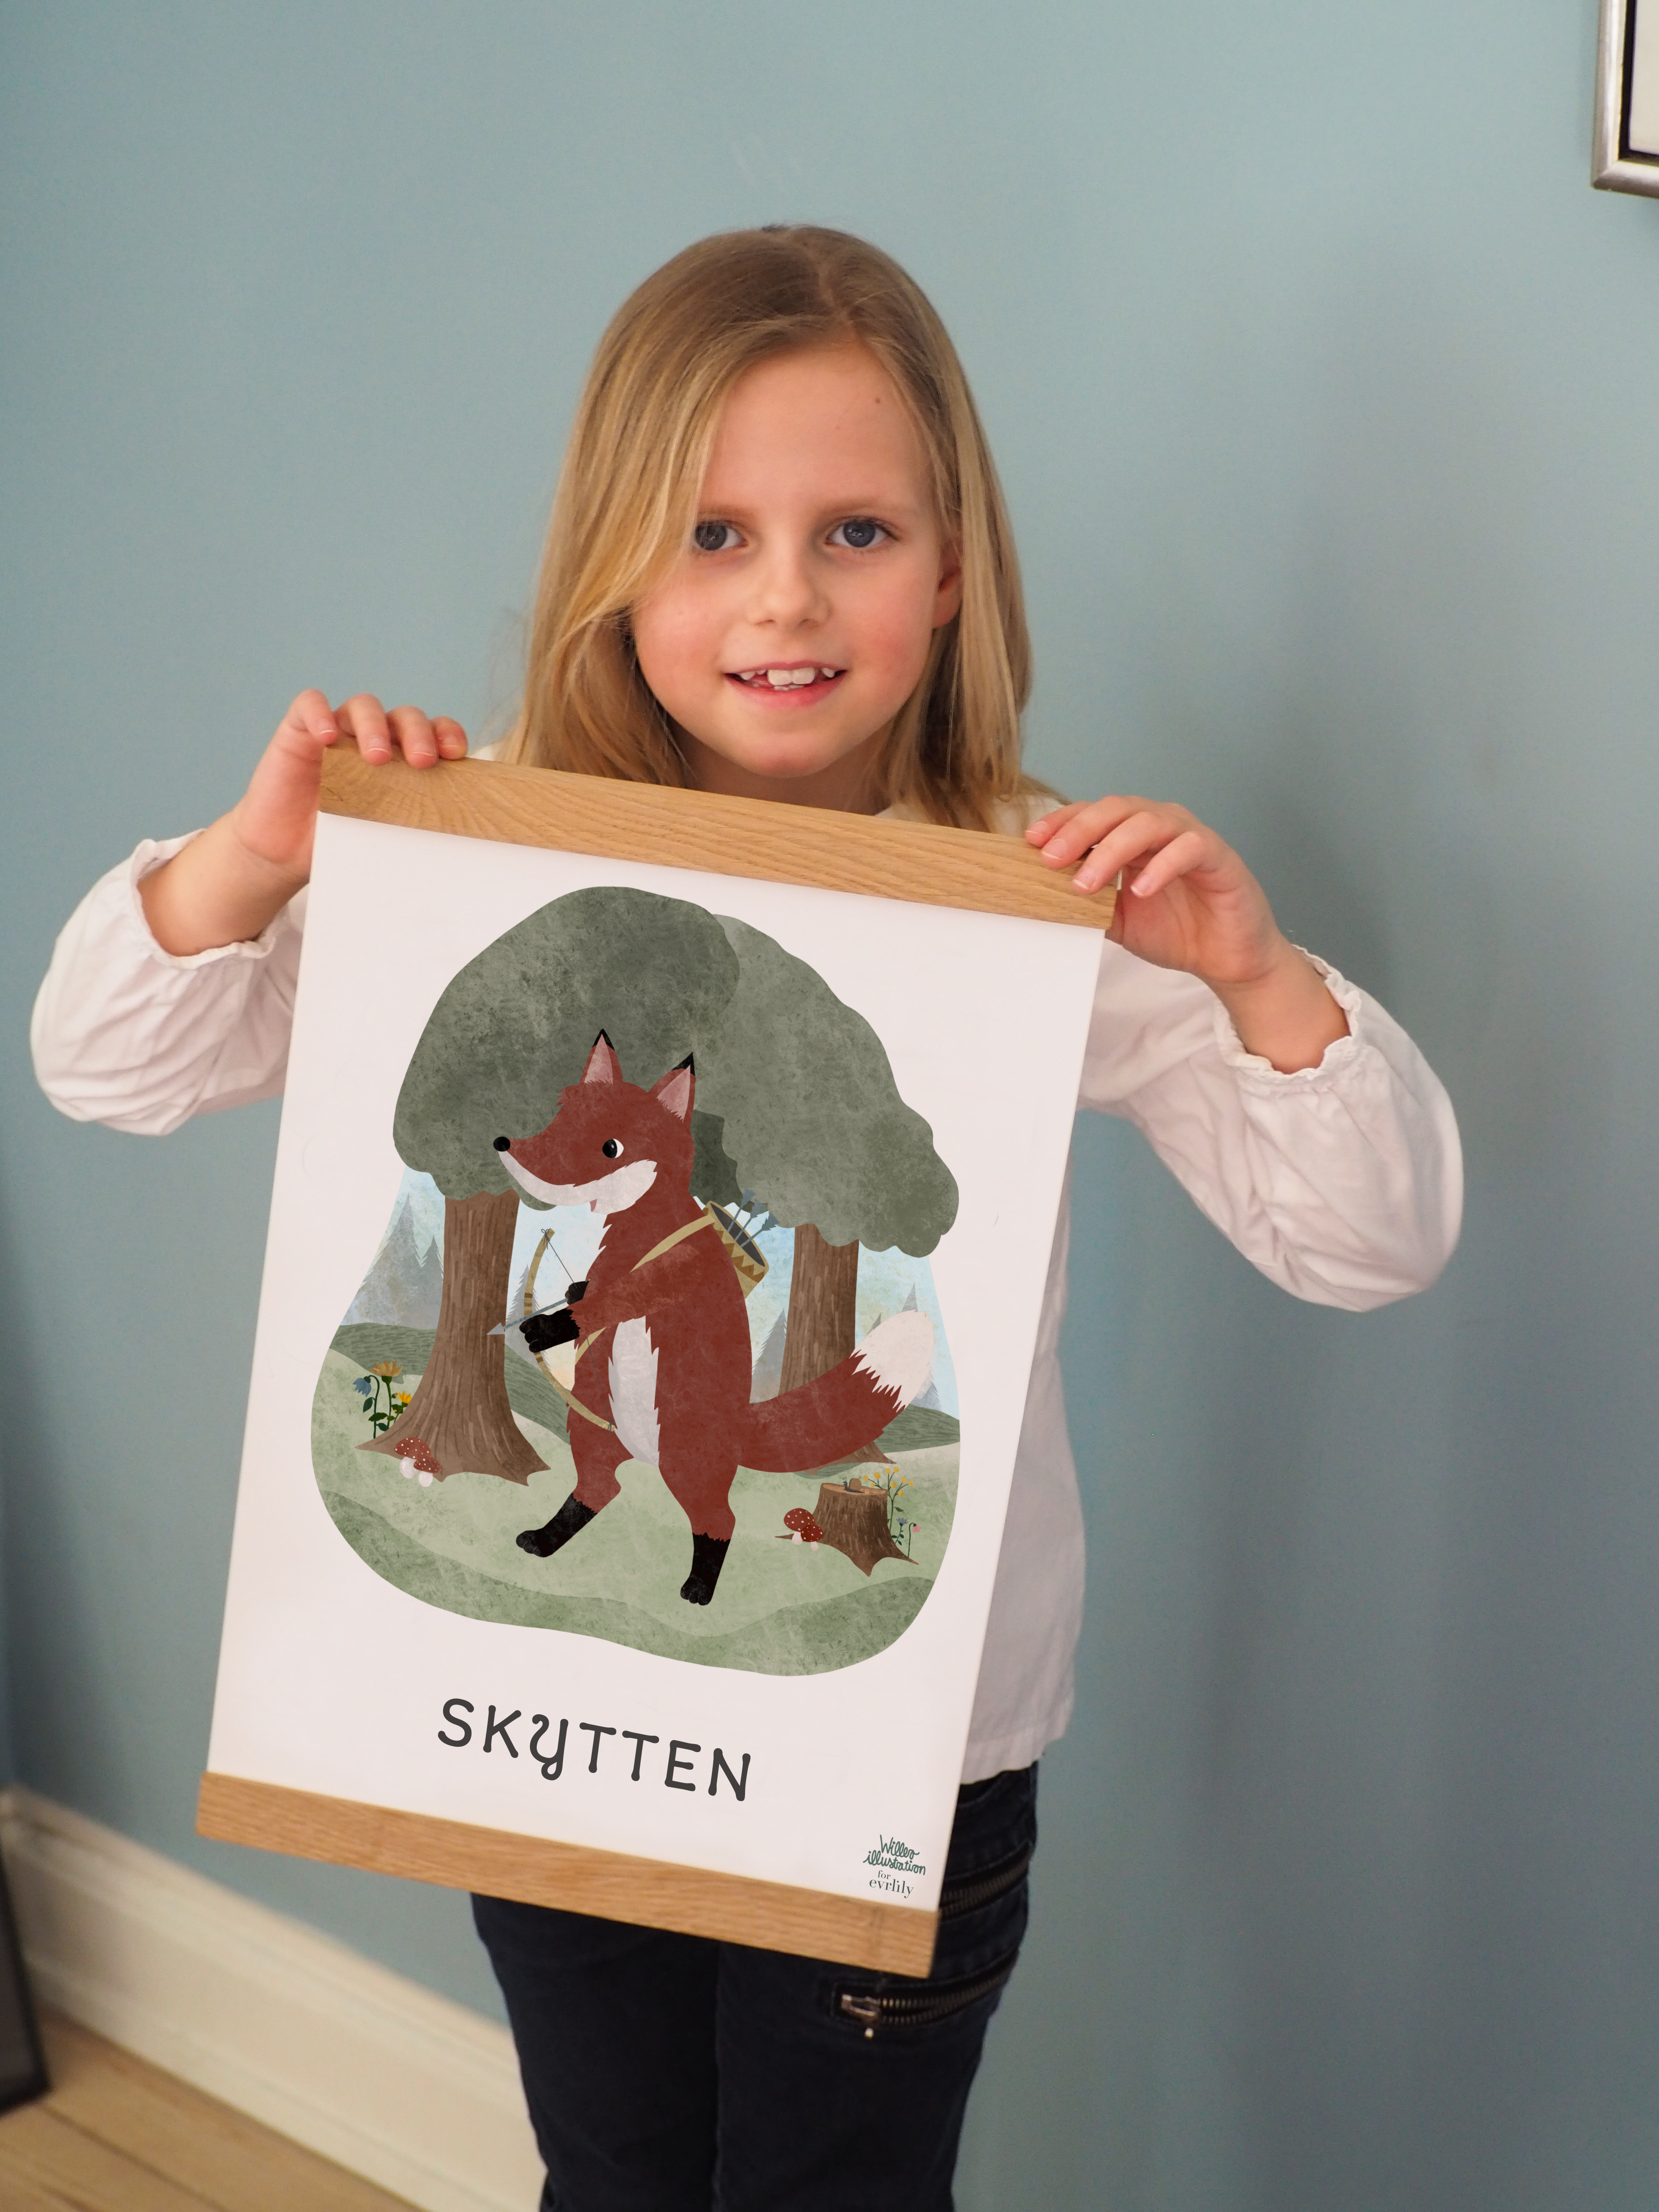 Kær pige holder en personlig plakat med stjernetegnet skytten.